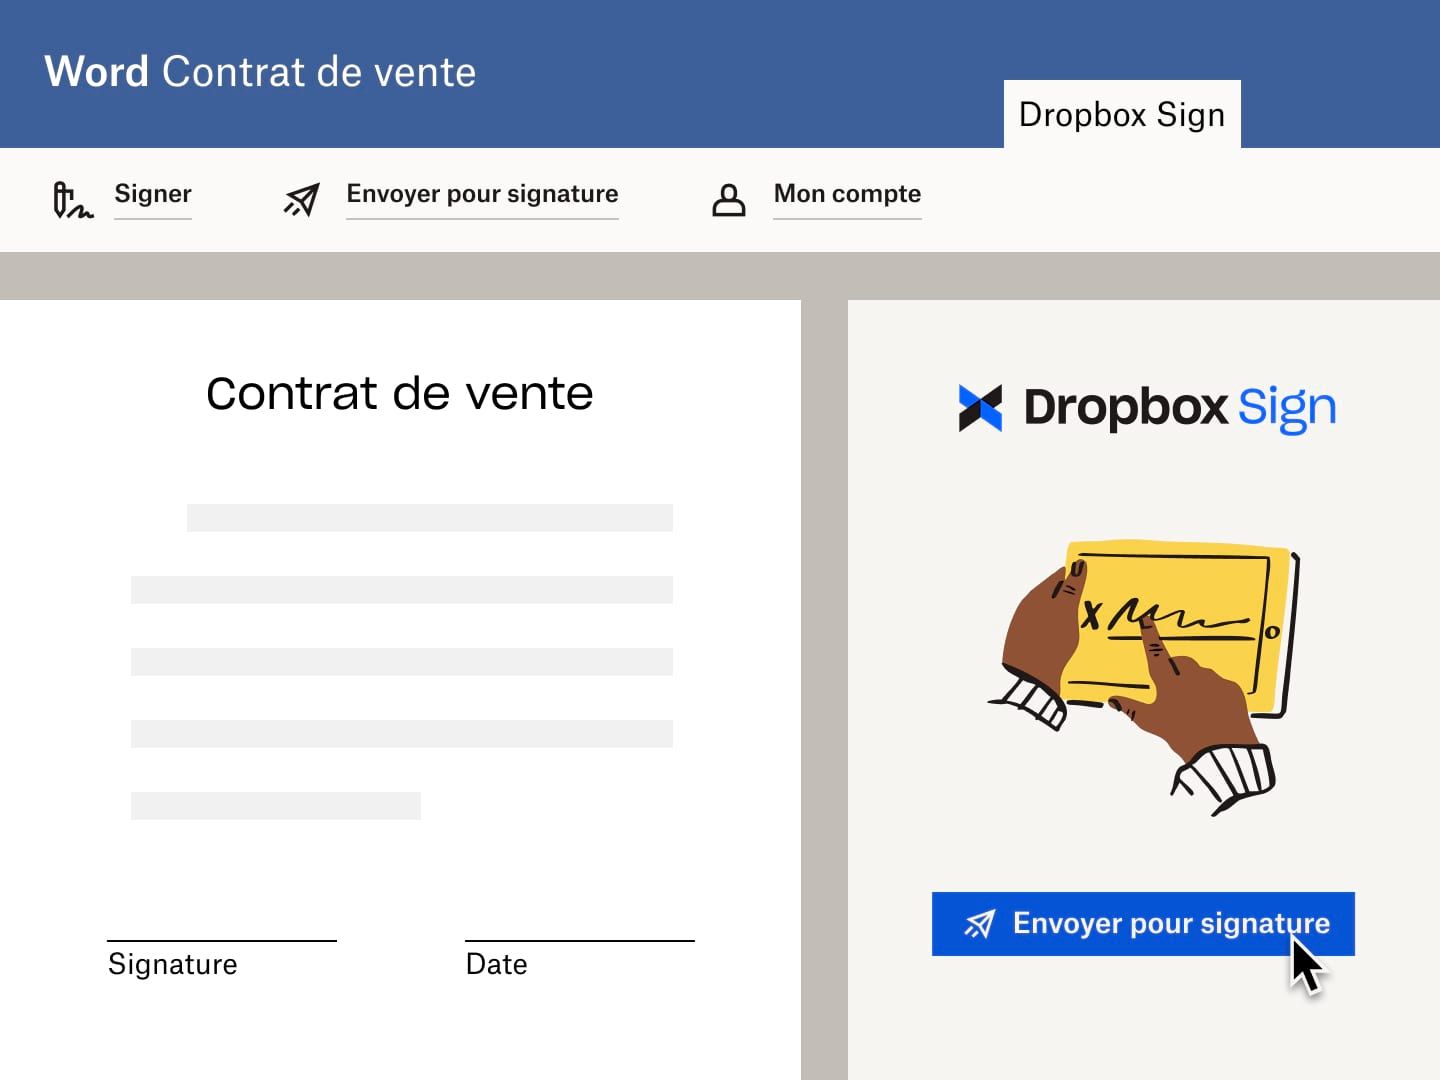 Utilisateur envoyant un contrat de vente dans Microsoft Word avec une demande de signature électronique Dropbox Sign